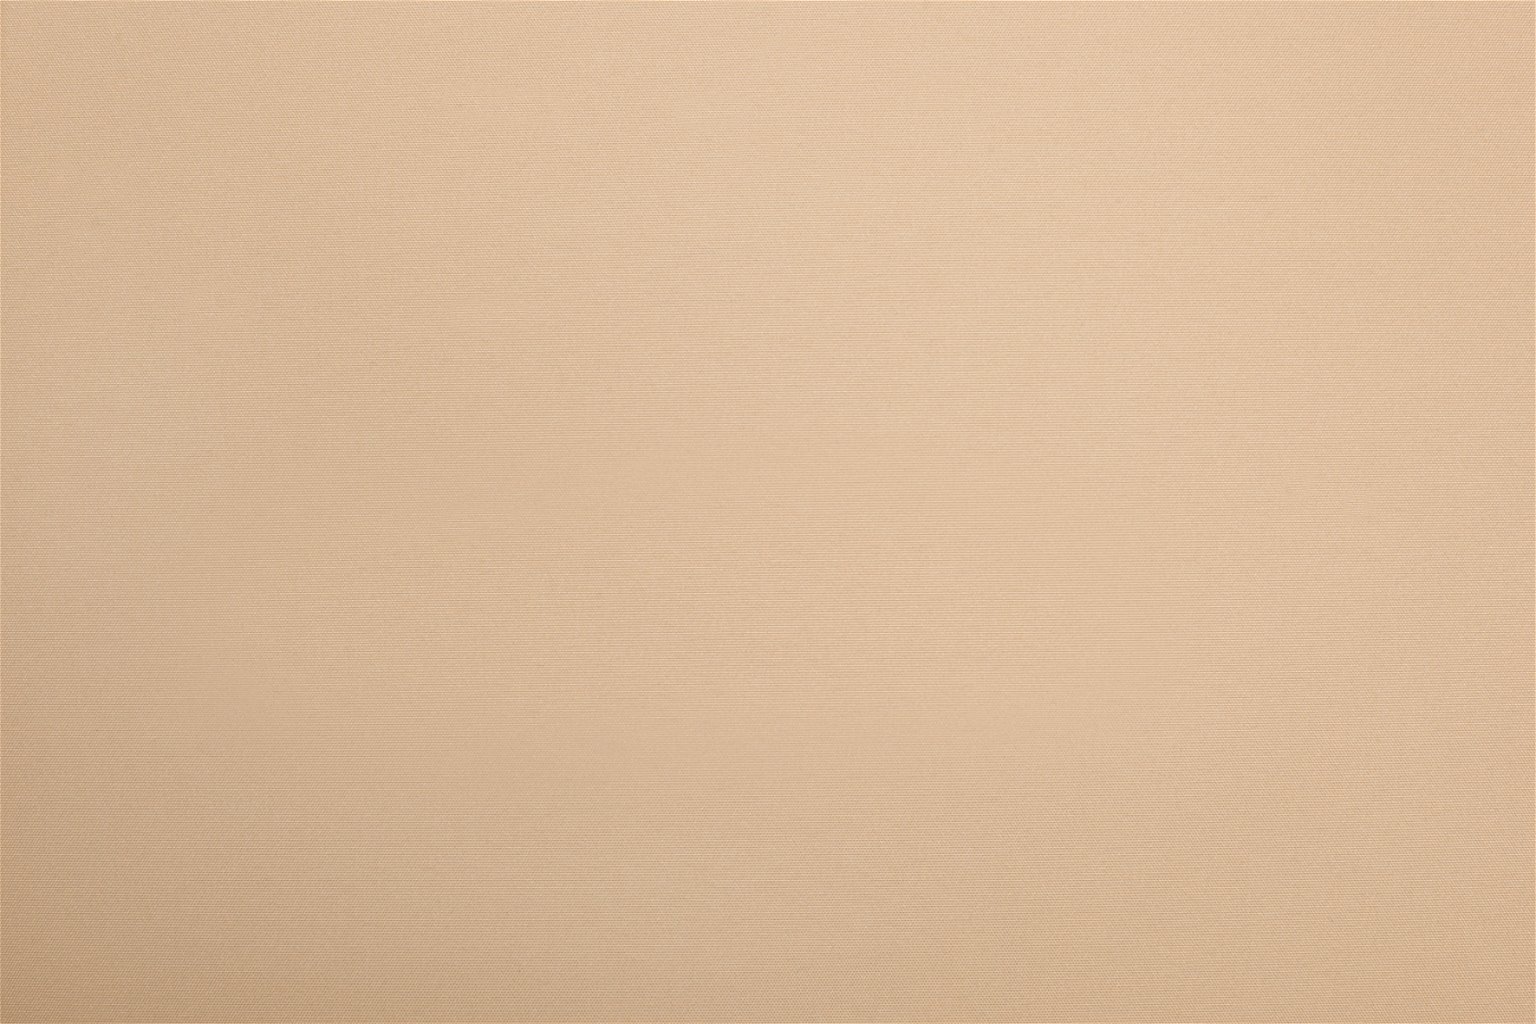 Mini ritininė užuolaida BERLIN Blackout, šv. rudos sp., 57 x 150 cm, 100 % poliesteris - 4